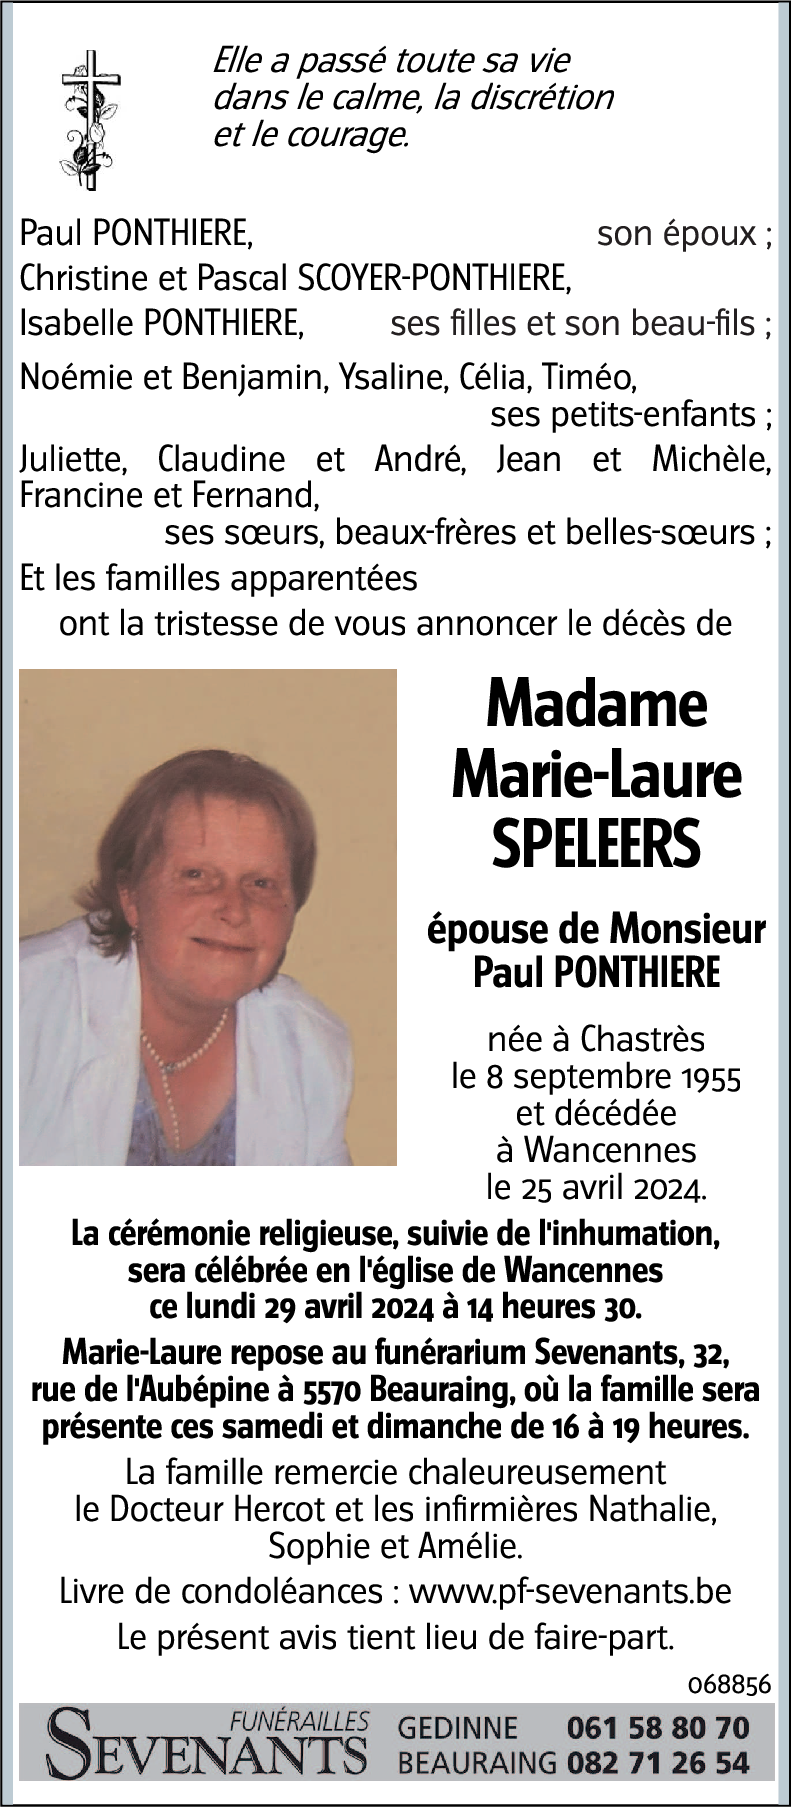 Marie-Laure SPELEERS